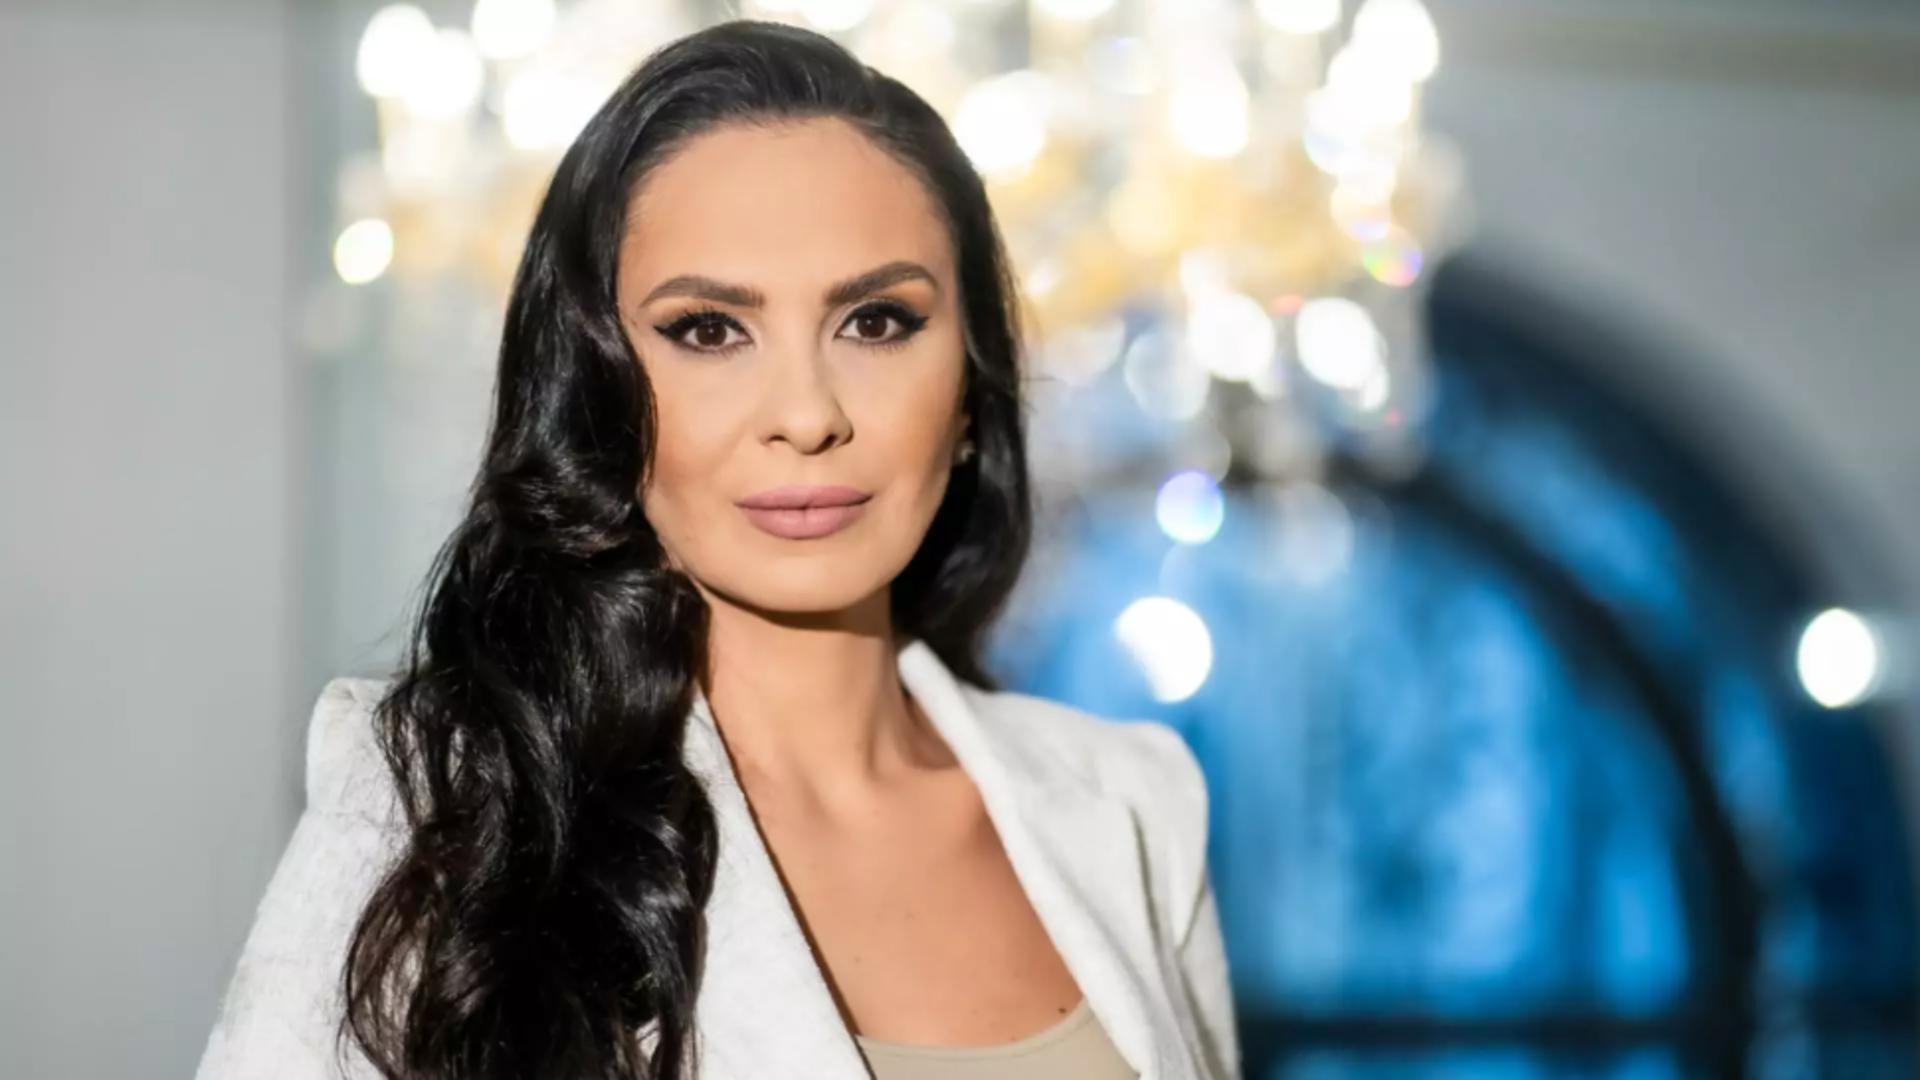 Alexandra Păcuraru: „Să fim români buni și demni, indiferent cât ne va fi de greu”